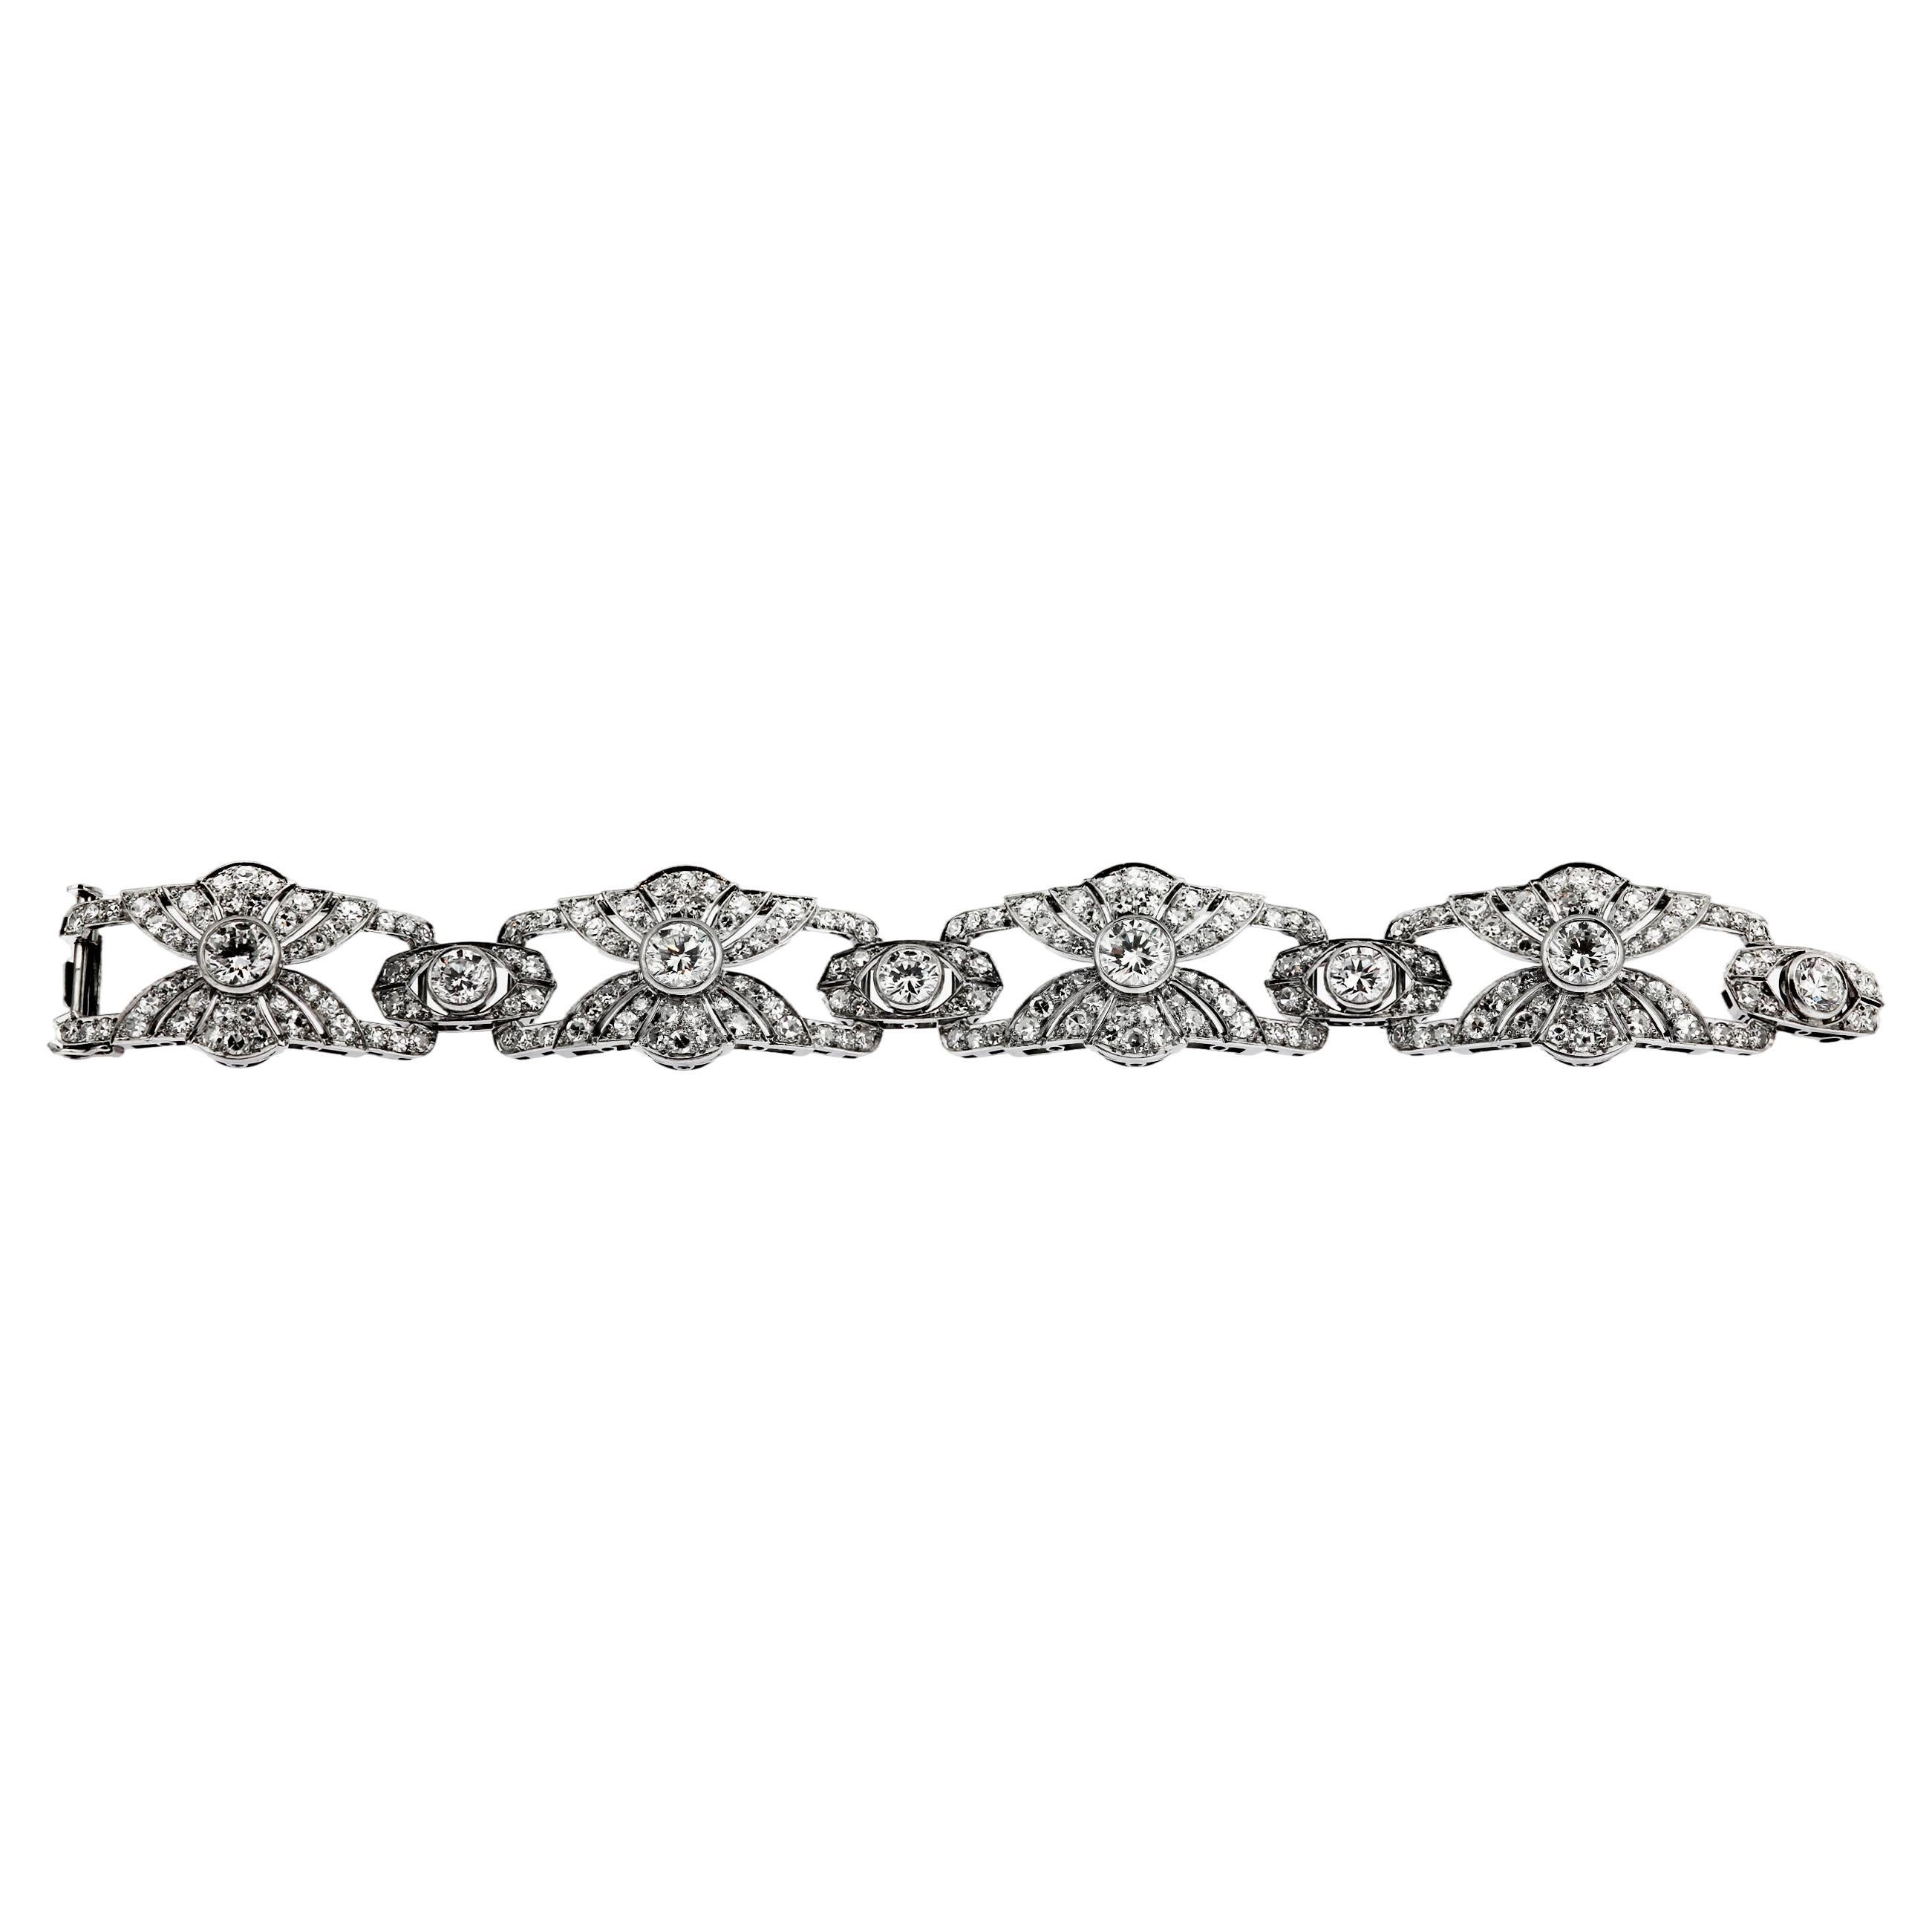 Platinum Art Deco Fine White Diamond Bracelet with Fan Motif Design approx. 12ct For Sale